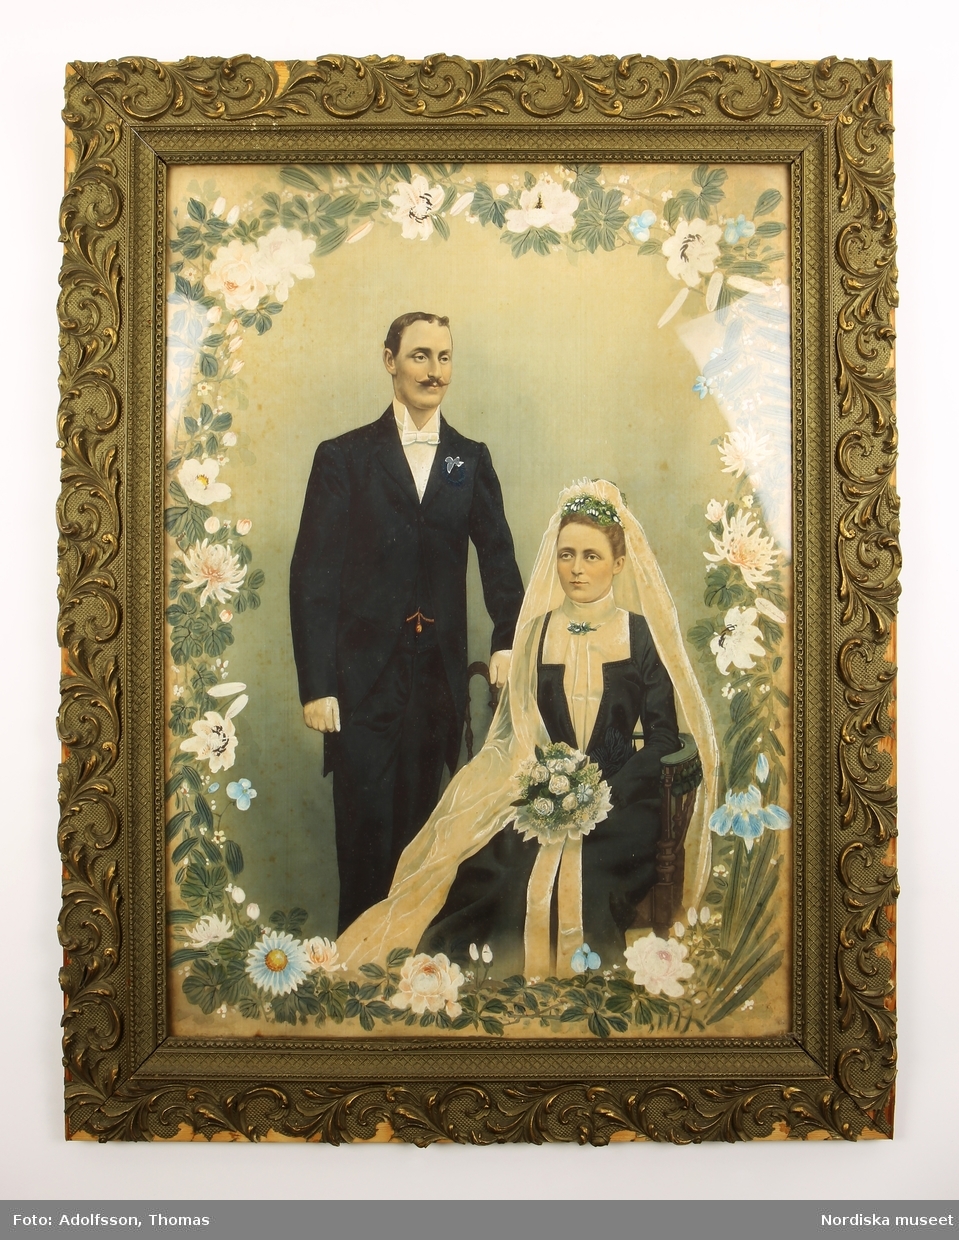 Bröllopsfotografi, dubbelporträtt av man och kvinna iförda bröllopsdräkt.